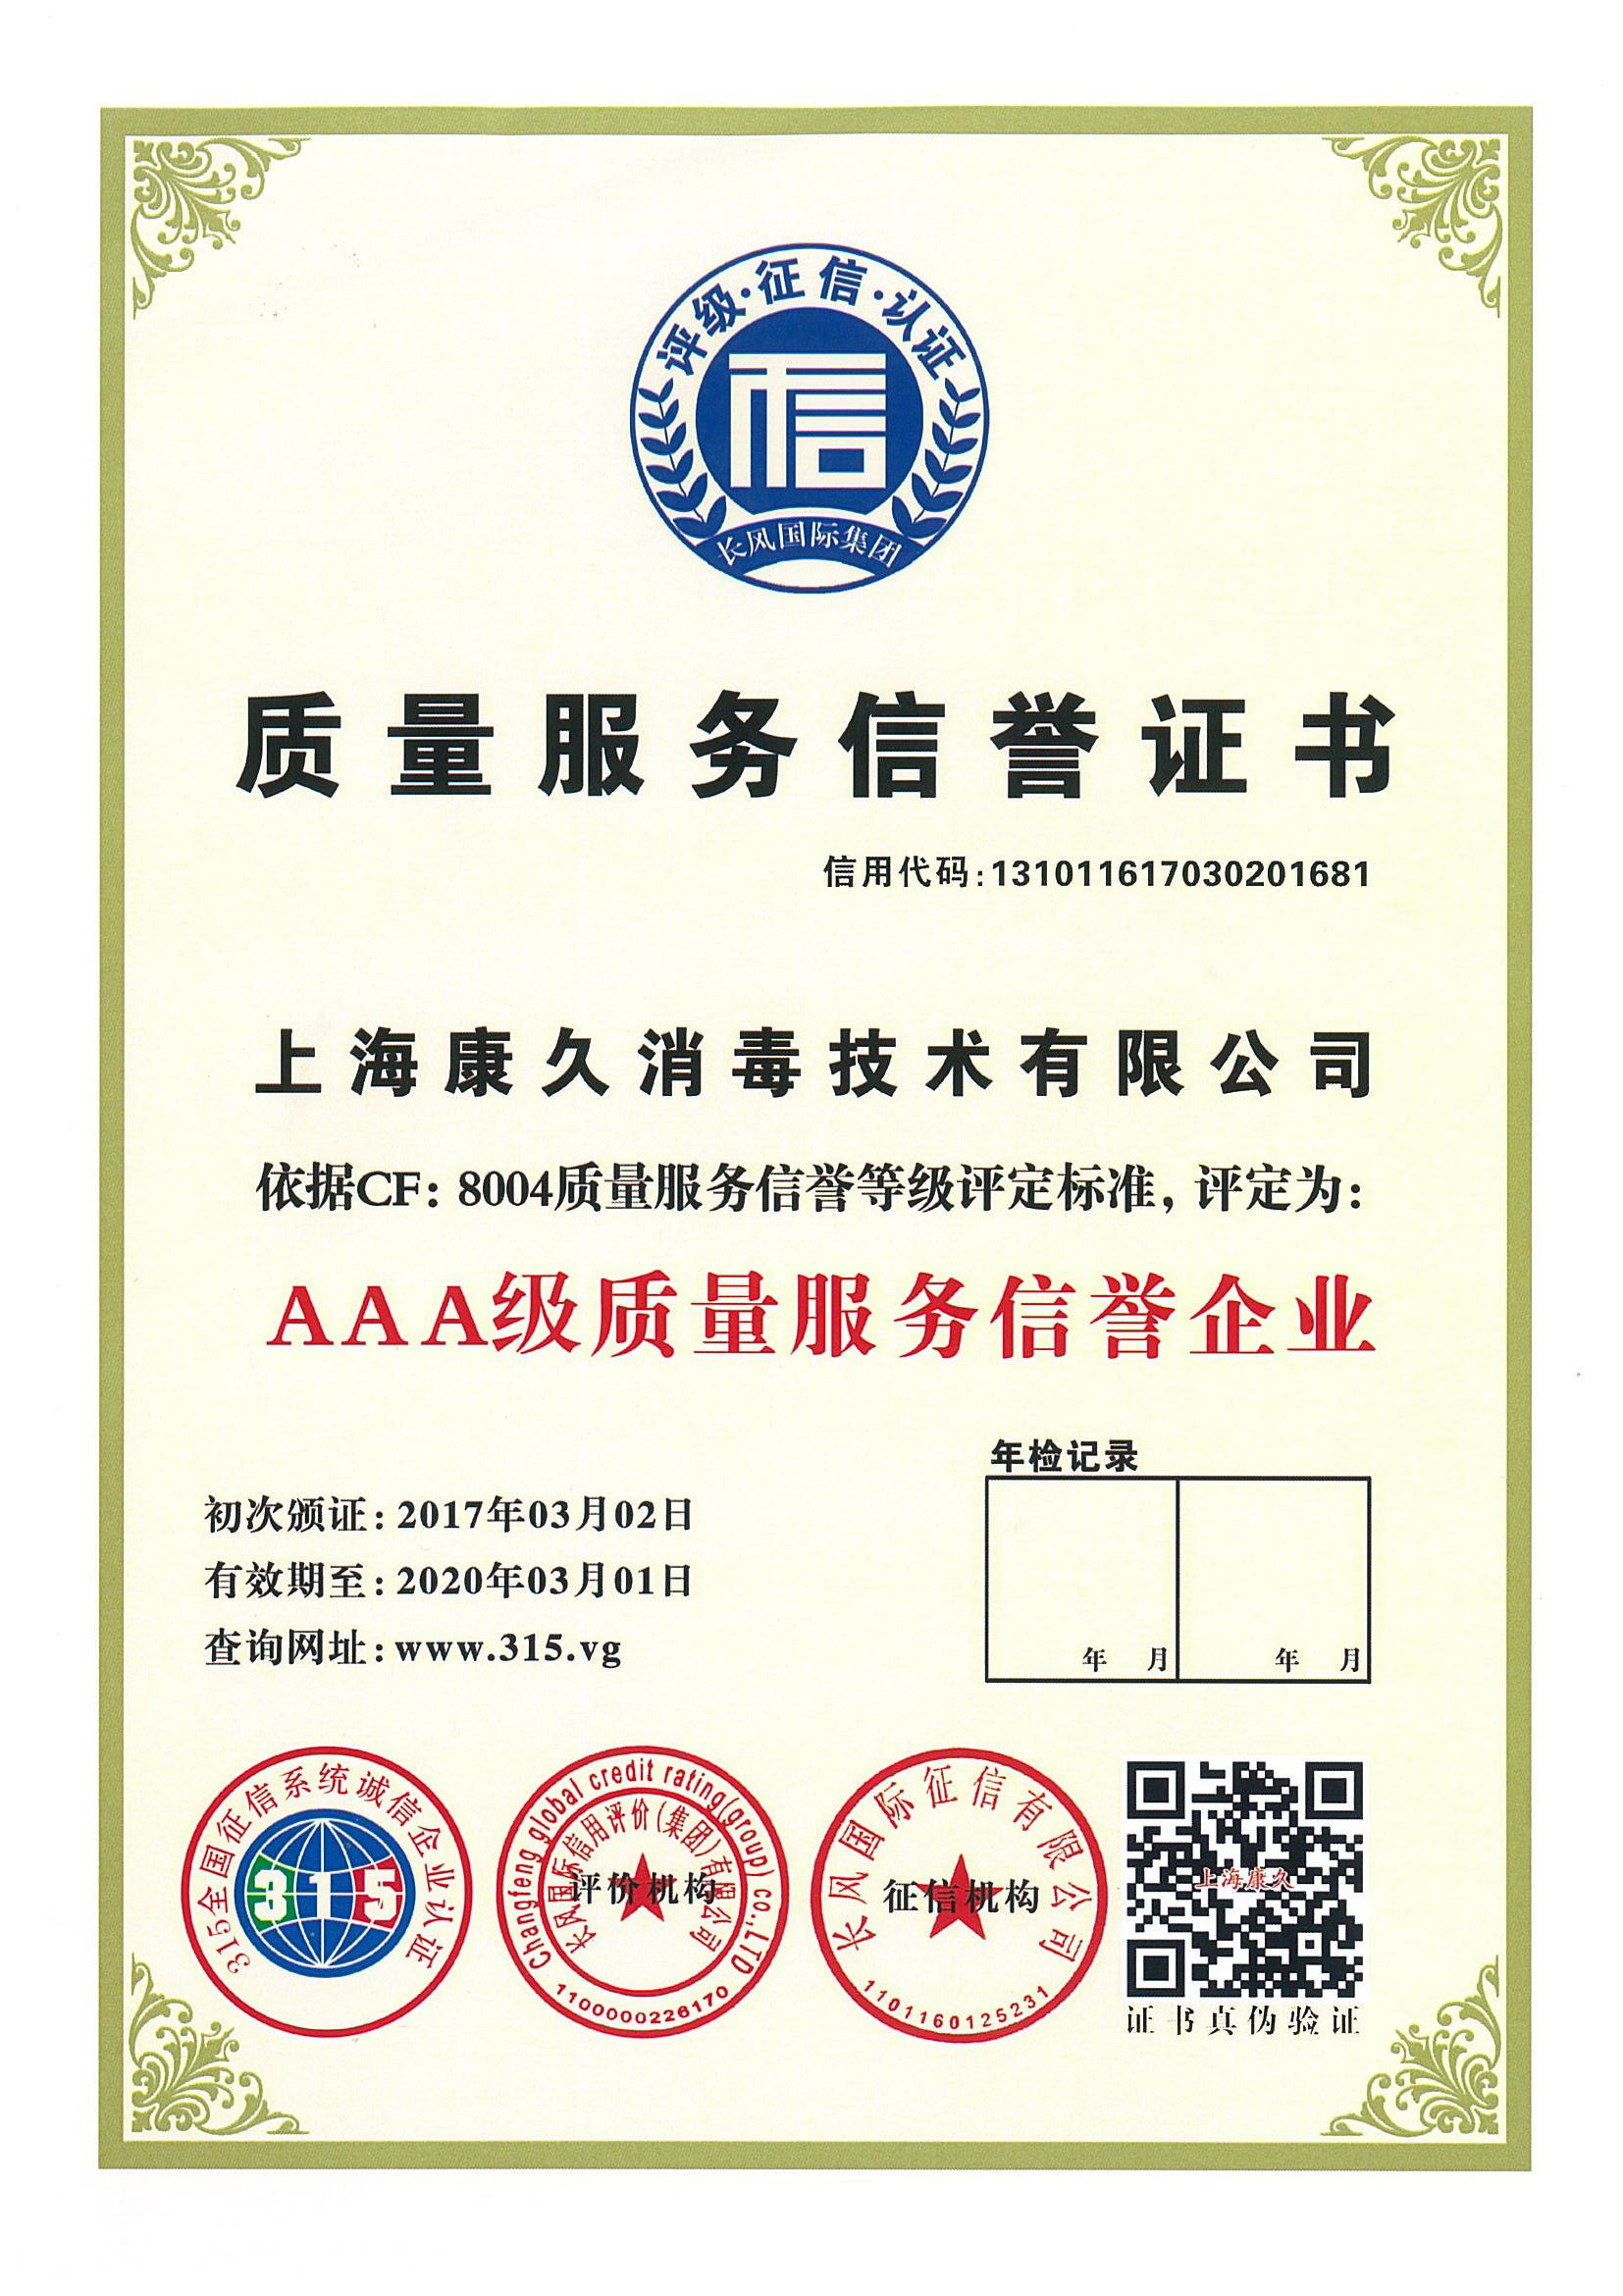 “荆州质量服务信誉证书